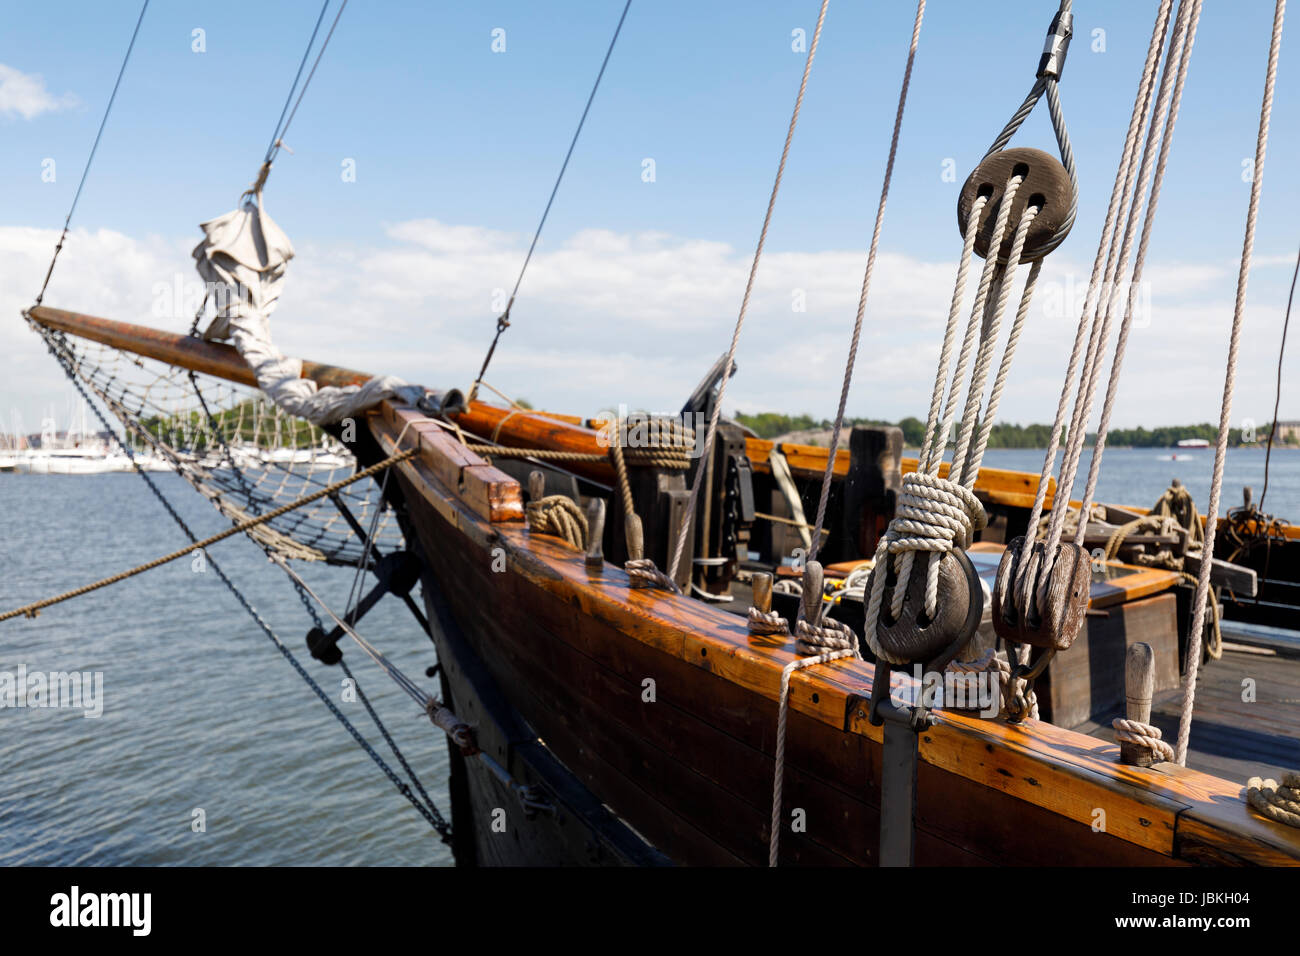 Antiche Imbarcazioni A Vela In Legno Di Pulegge E Funi Dettaglio Foto Stock Alamy